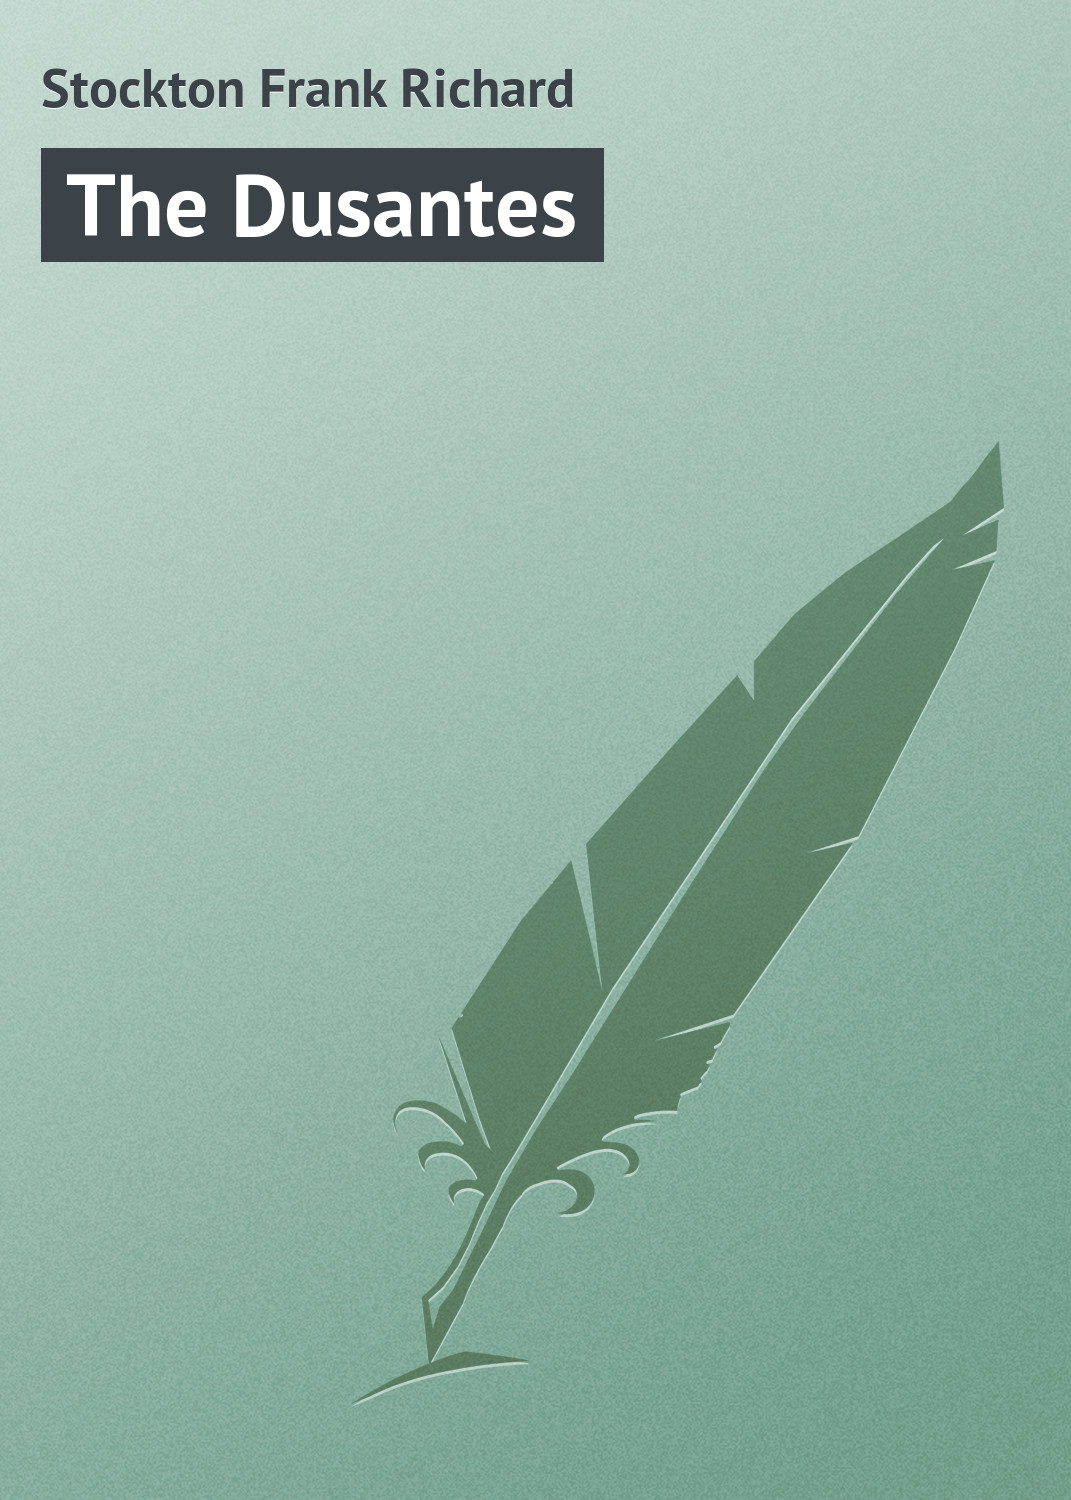 Книга The Dusantes из серии , созданная Frank Stockton, может относится к жанру Зарубежная классика, Иностранные языки. Стоимость электронной книги The Dusantes с идентификатором 23163115 составляет 5.99 руб.